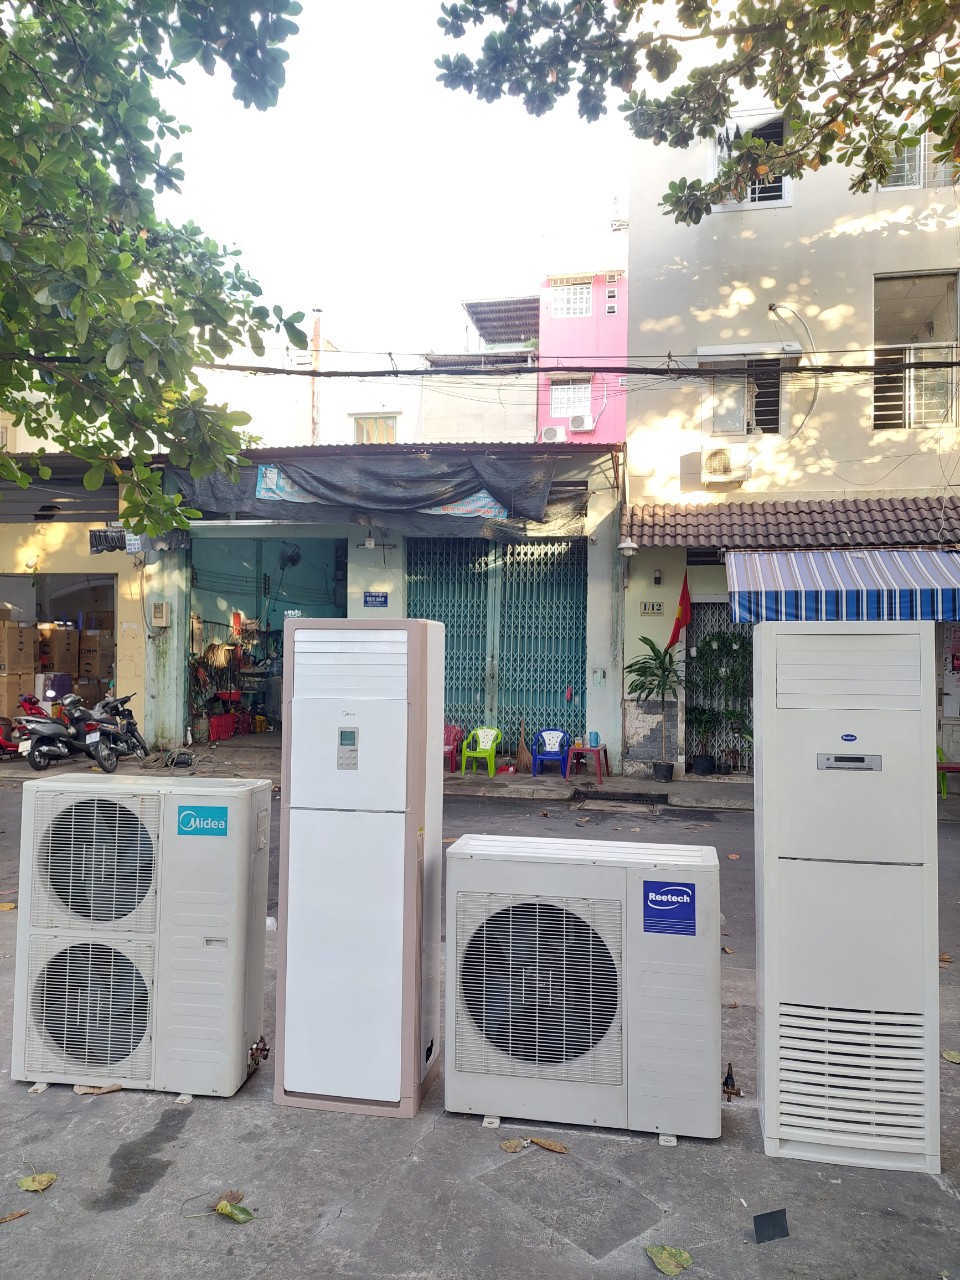 Mua bán máy lạnh cũ chính hãng quận 4✔️ 0907 243 680 Mr.Bảo